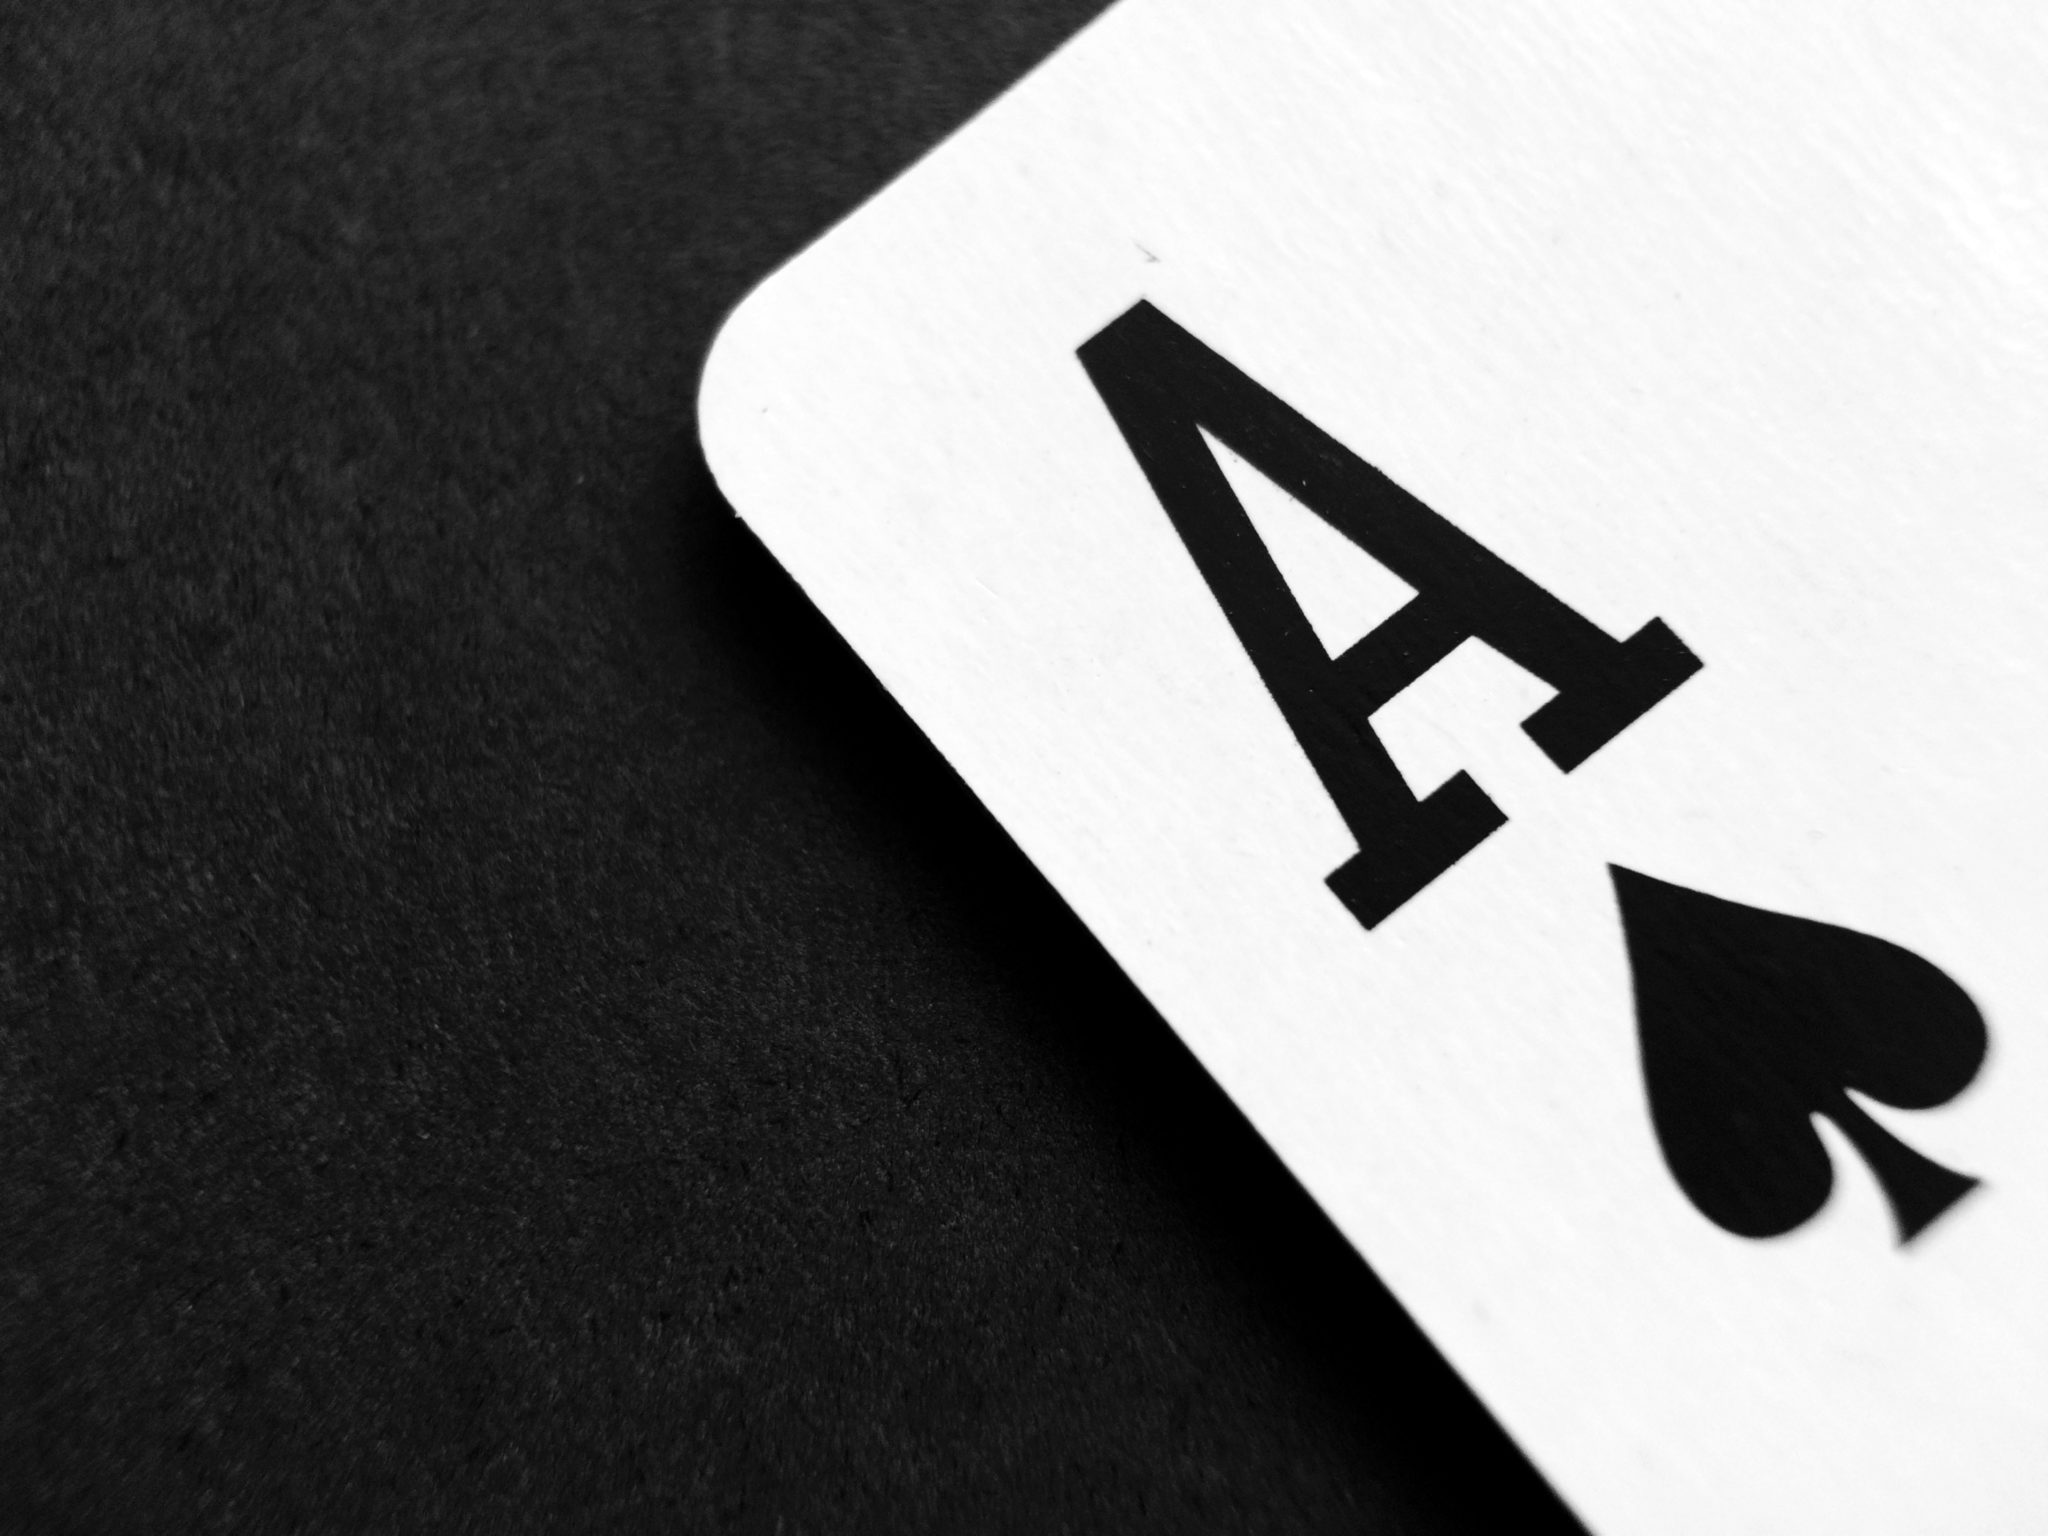 cartas, tarot, casino online, casino.com, Mystery Box